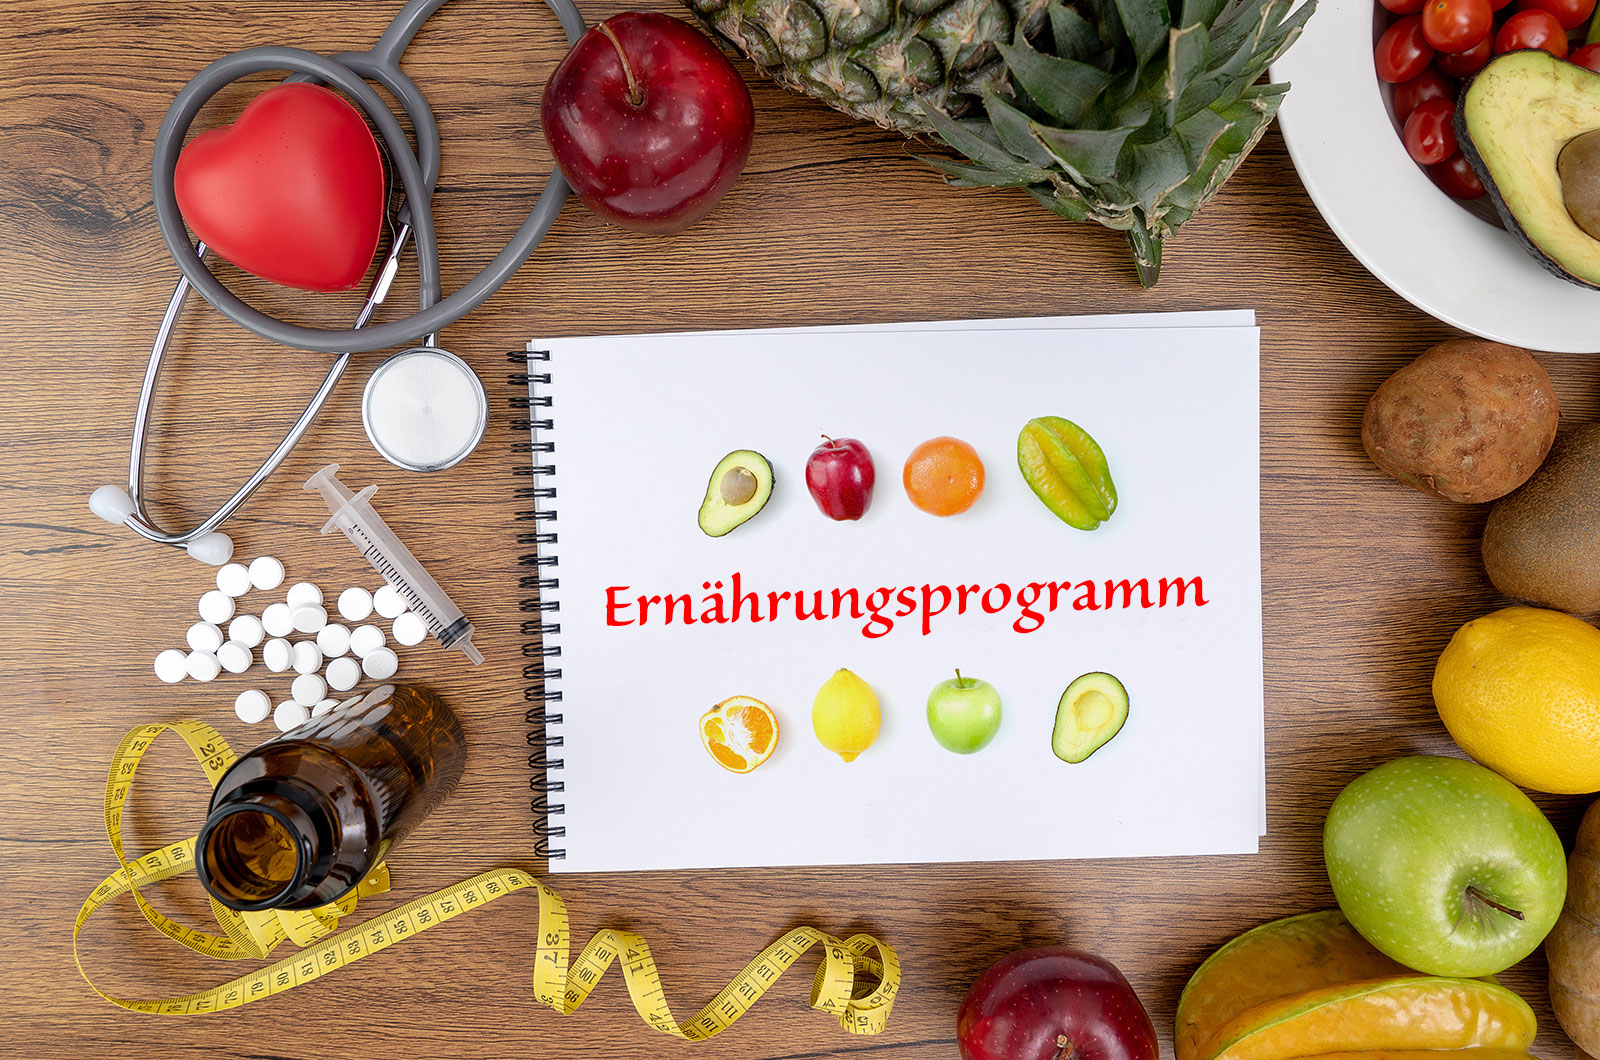 Ernährungsprogramm mit Fitness- und Abnehmkonzept, Hanteln, Pillen, Spritze, Obst und Maßband auf einem Holztisch